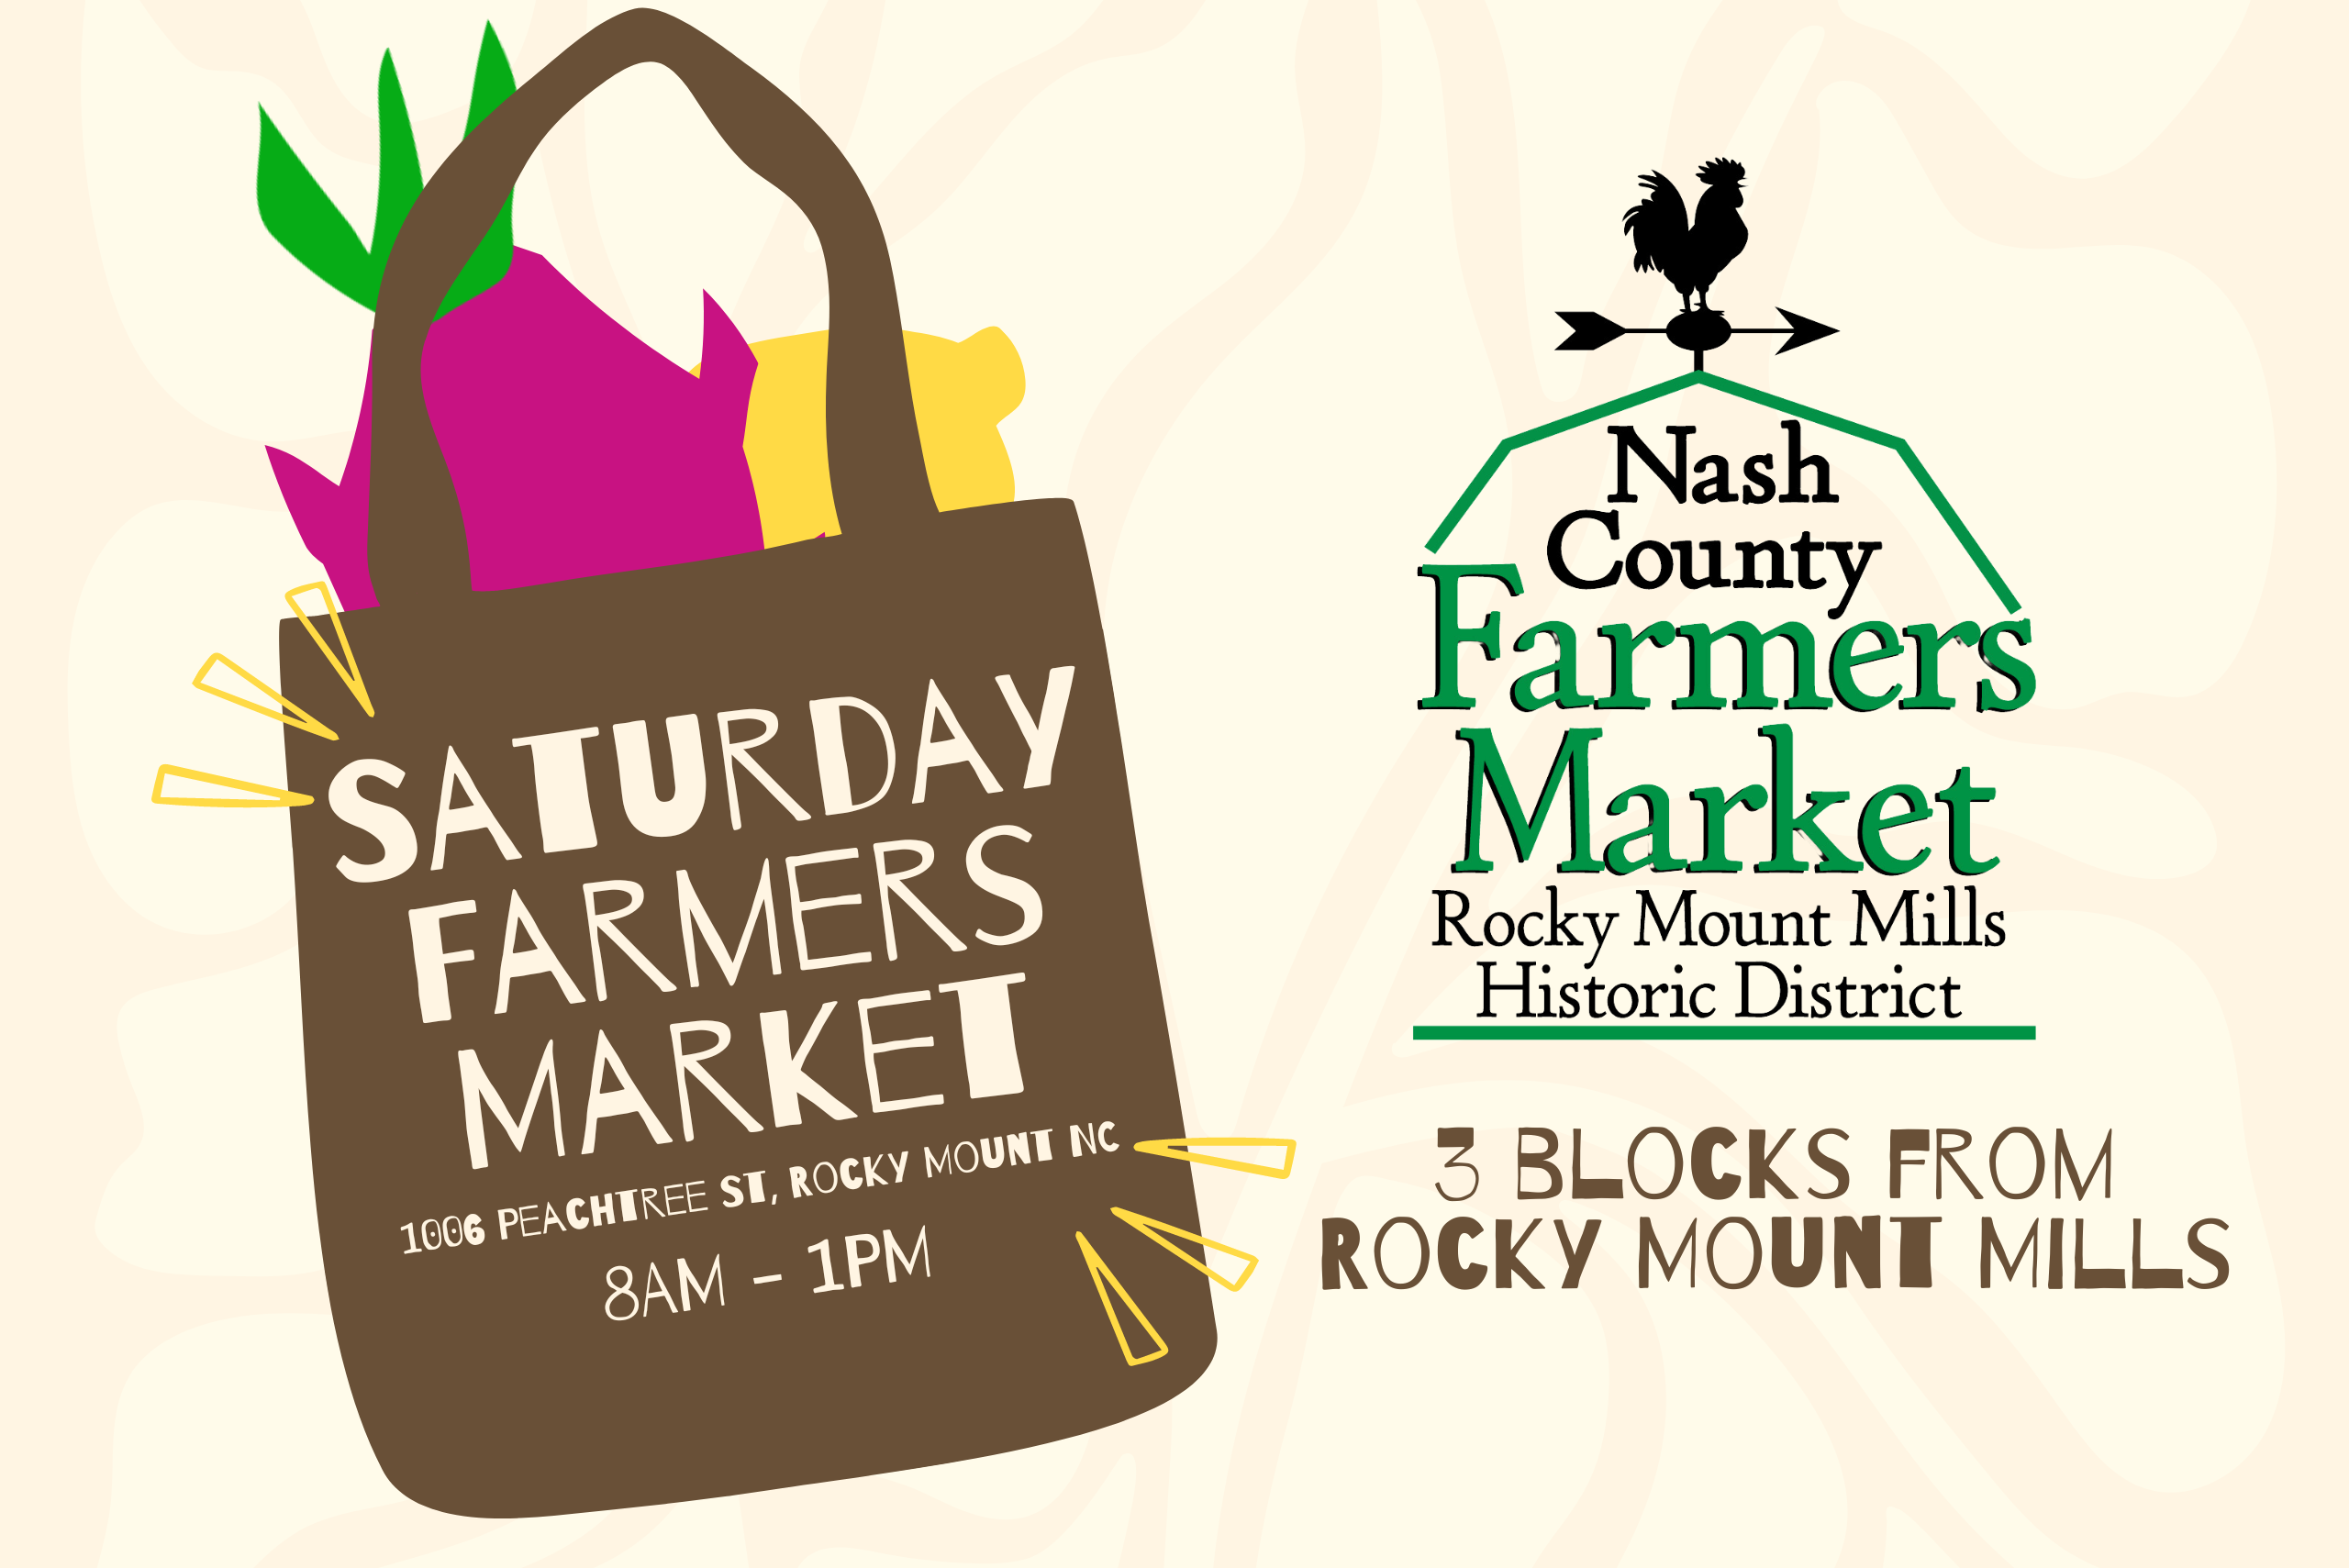 Holiday Market - Nash County Farmers Market